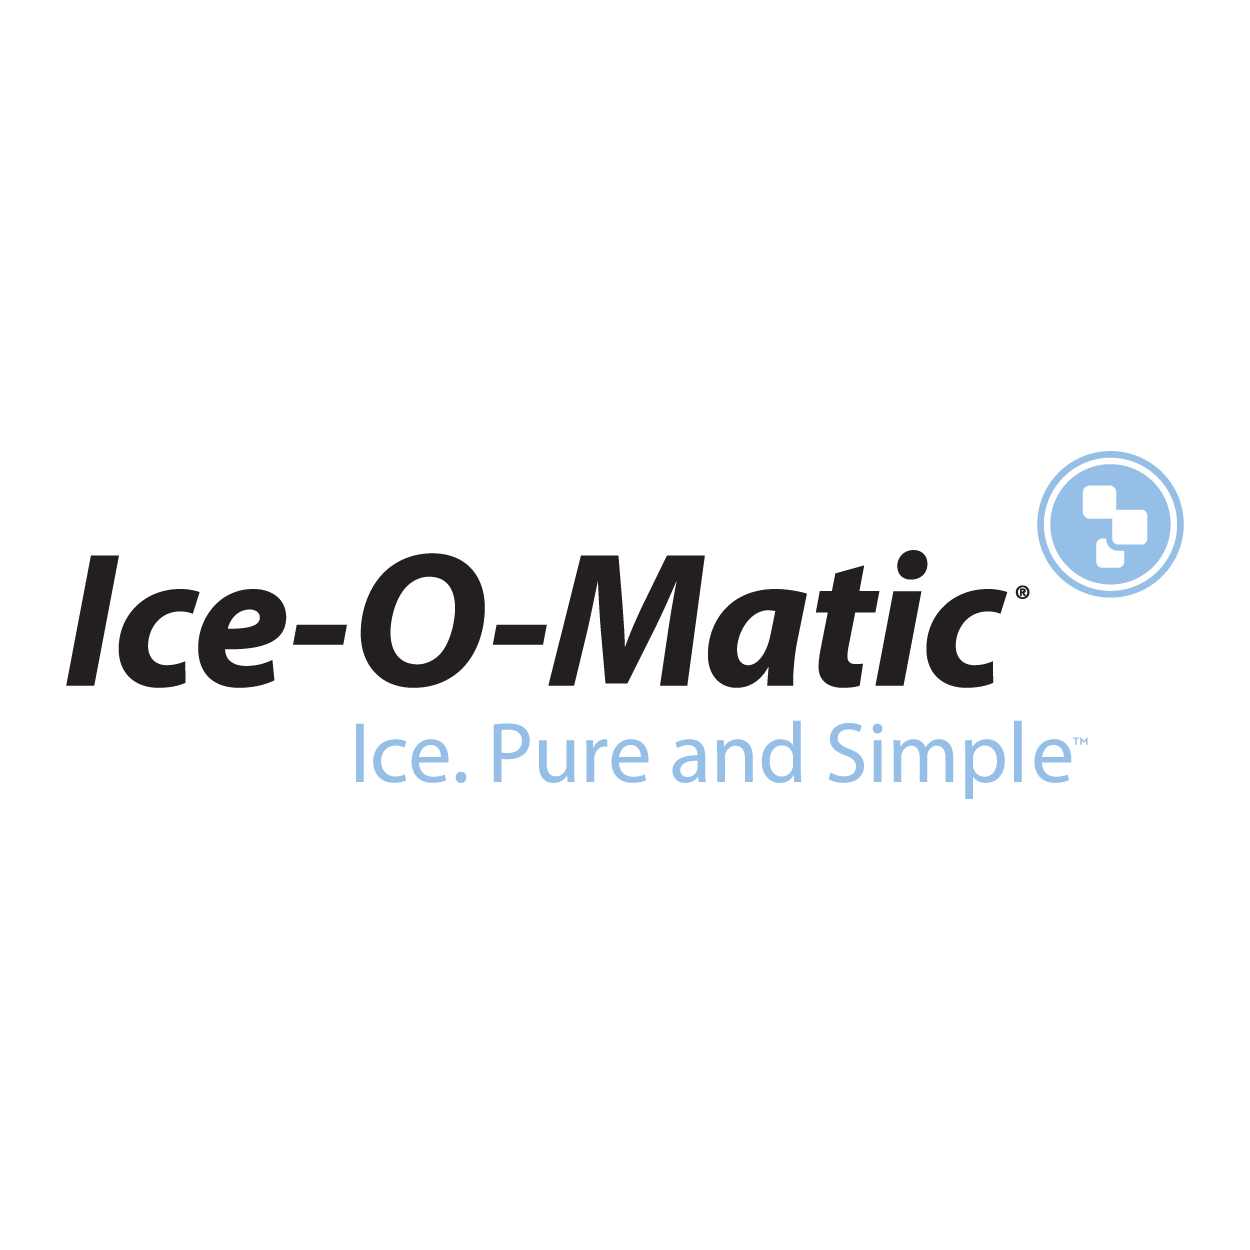 Ice O Matic